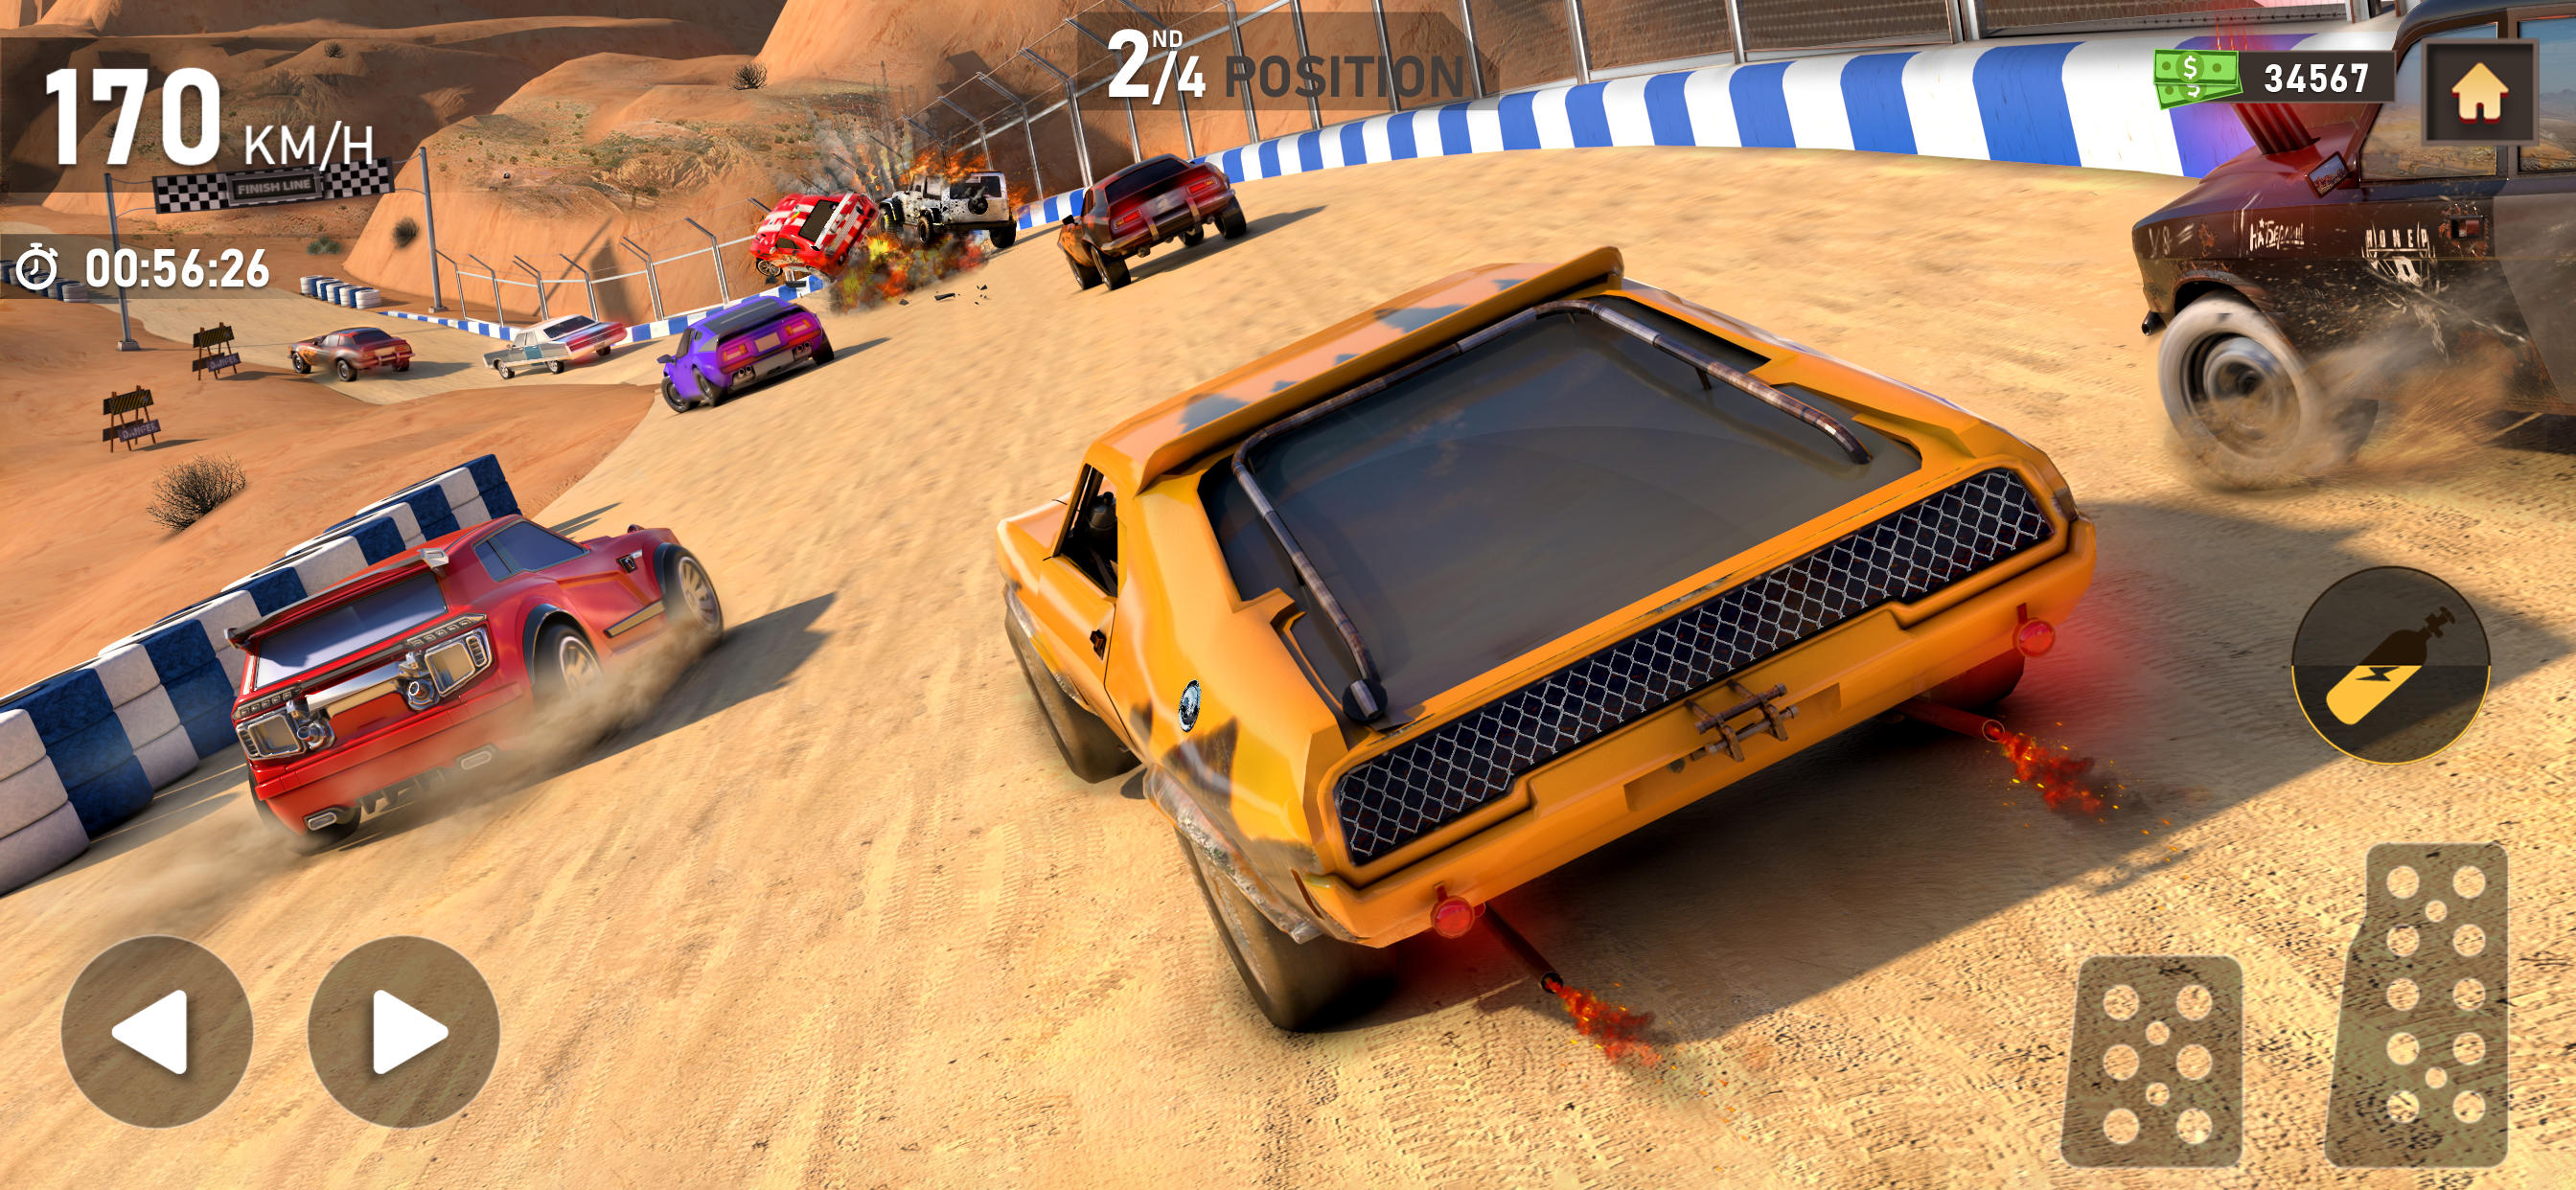 Screenshot 1 of Dirt Track Racing Car Games 1.0.6